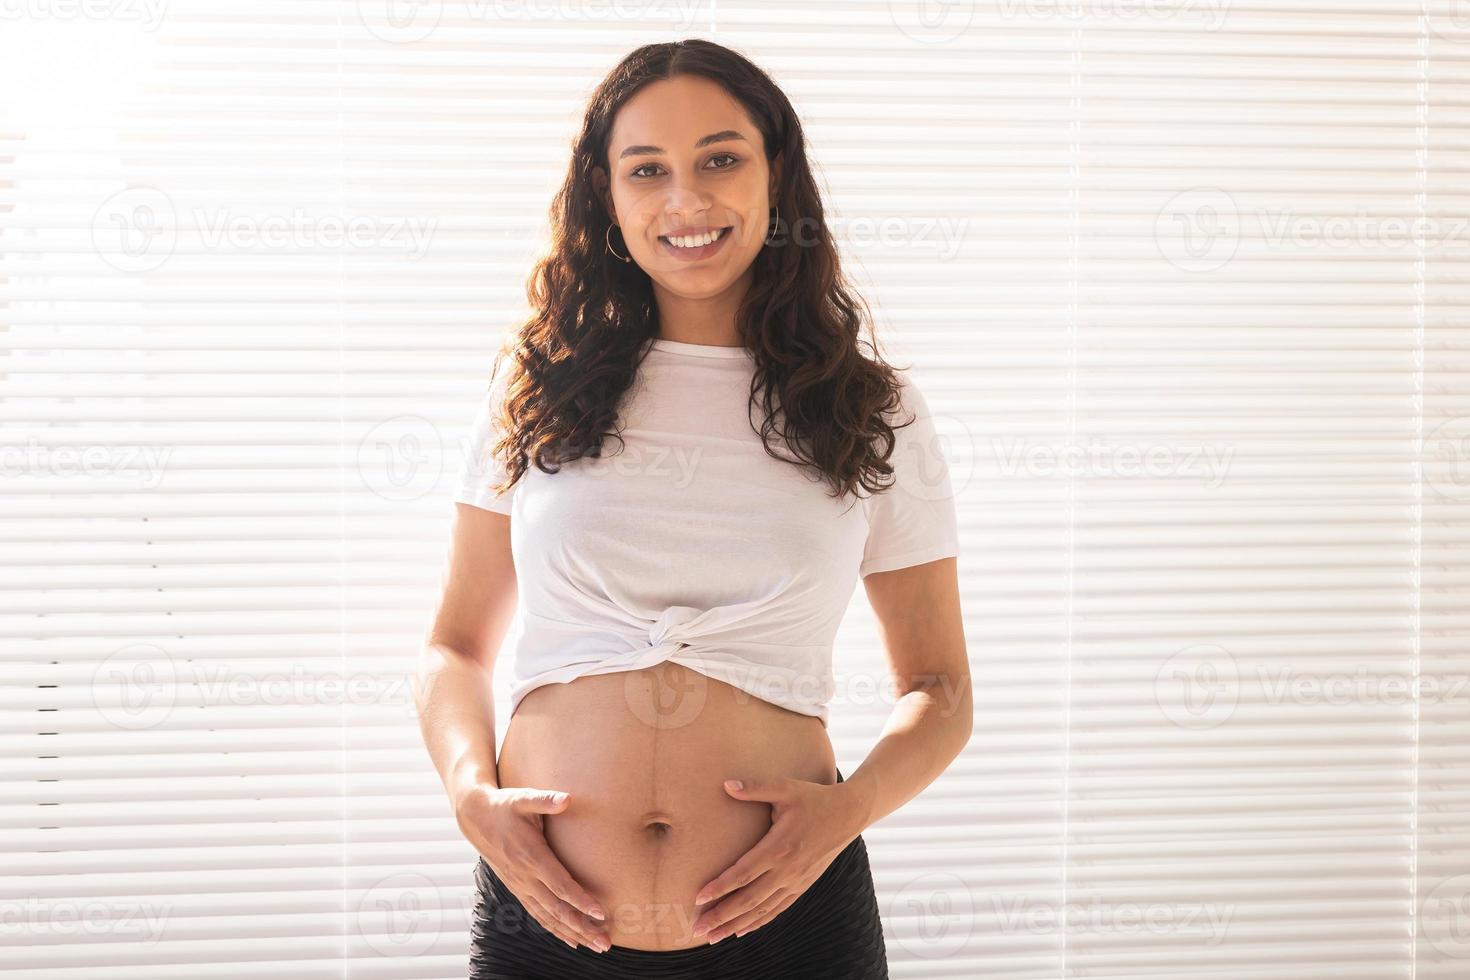 femme enceinte touchant son ventre, copiez l'espace. grossesse et congé de maternité photo